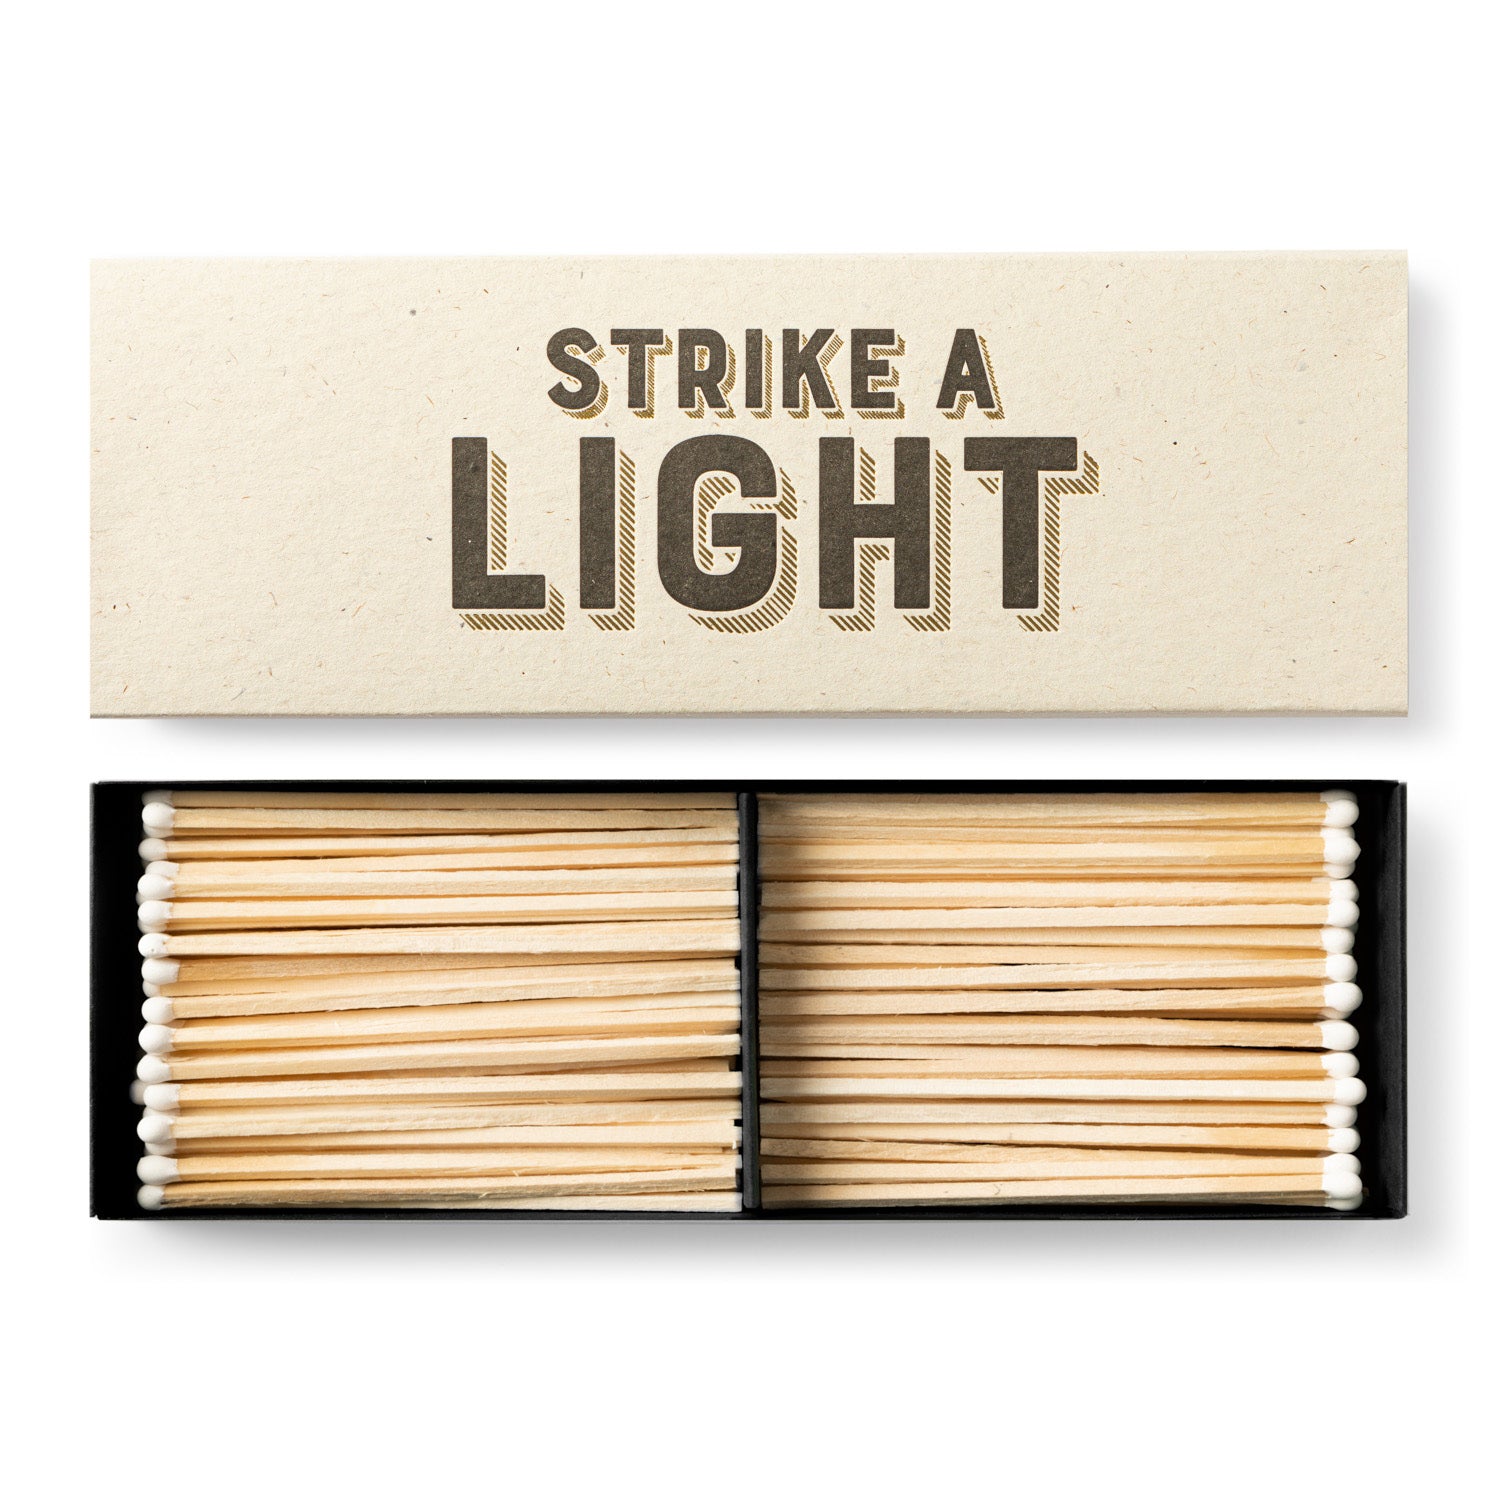 Strike a Light matchbox